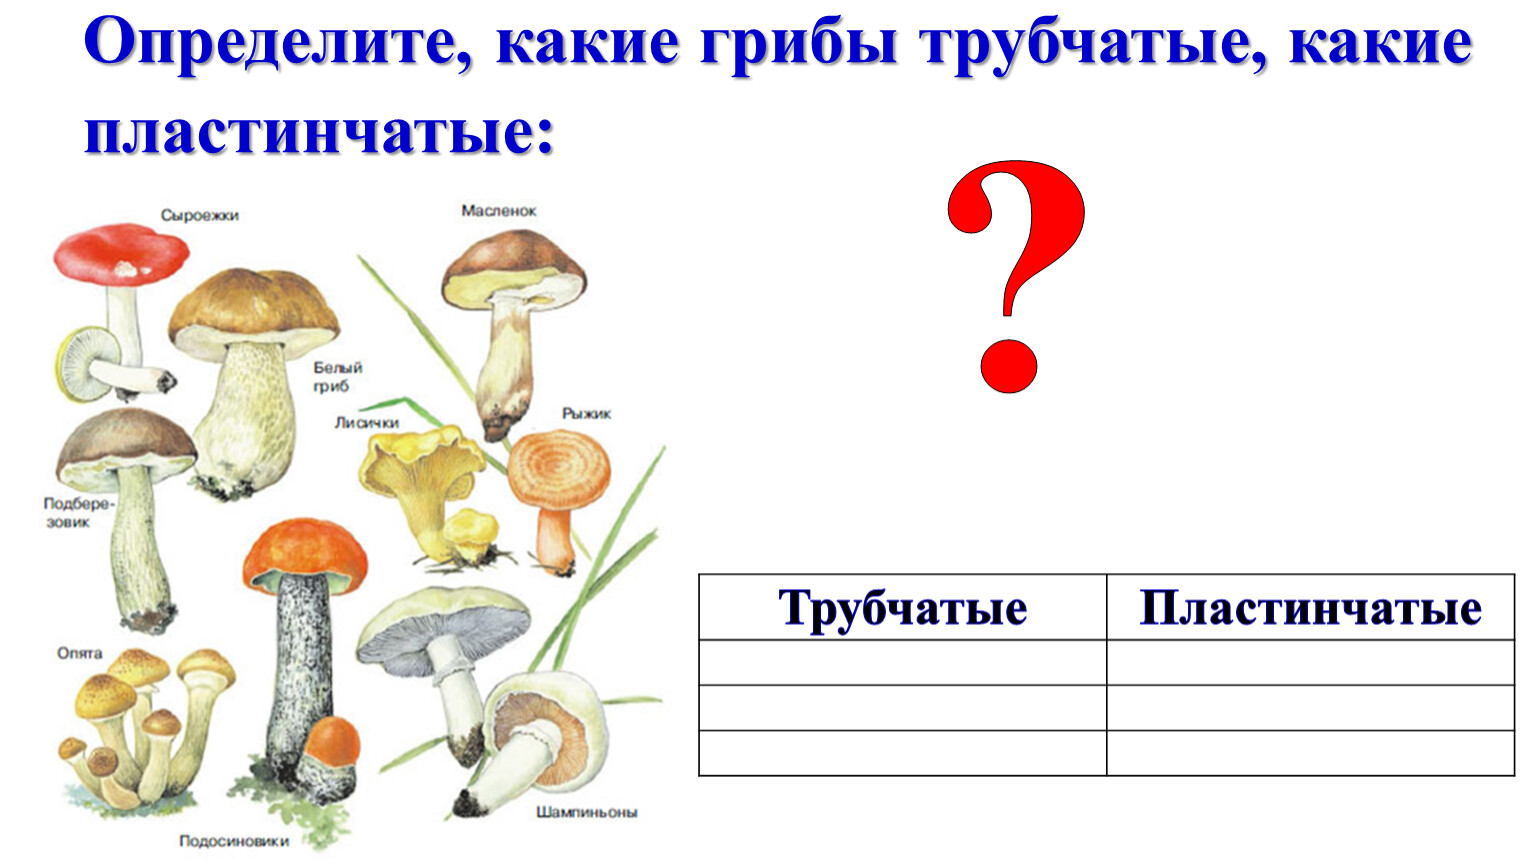 Пластинчатые грибы примеры. Трубчатые грибы. Масленок трубчатый или пластинчатый гриб. Трубчатые и пластинчатые грибы примеры.